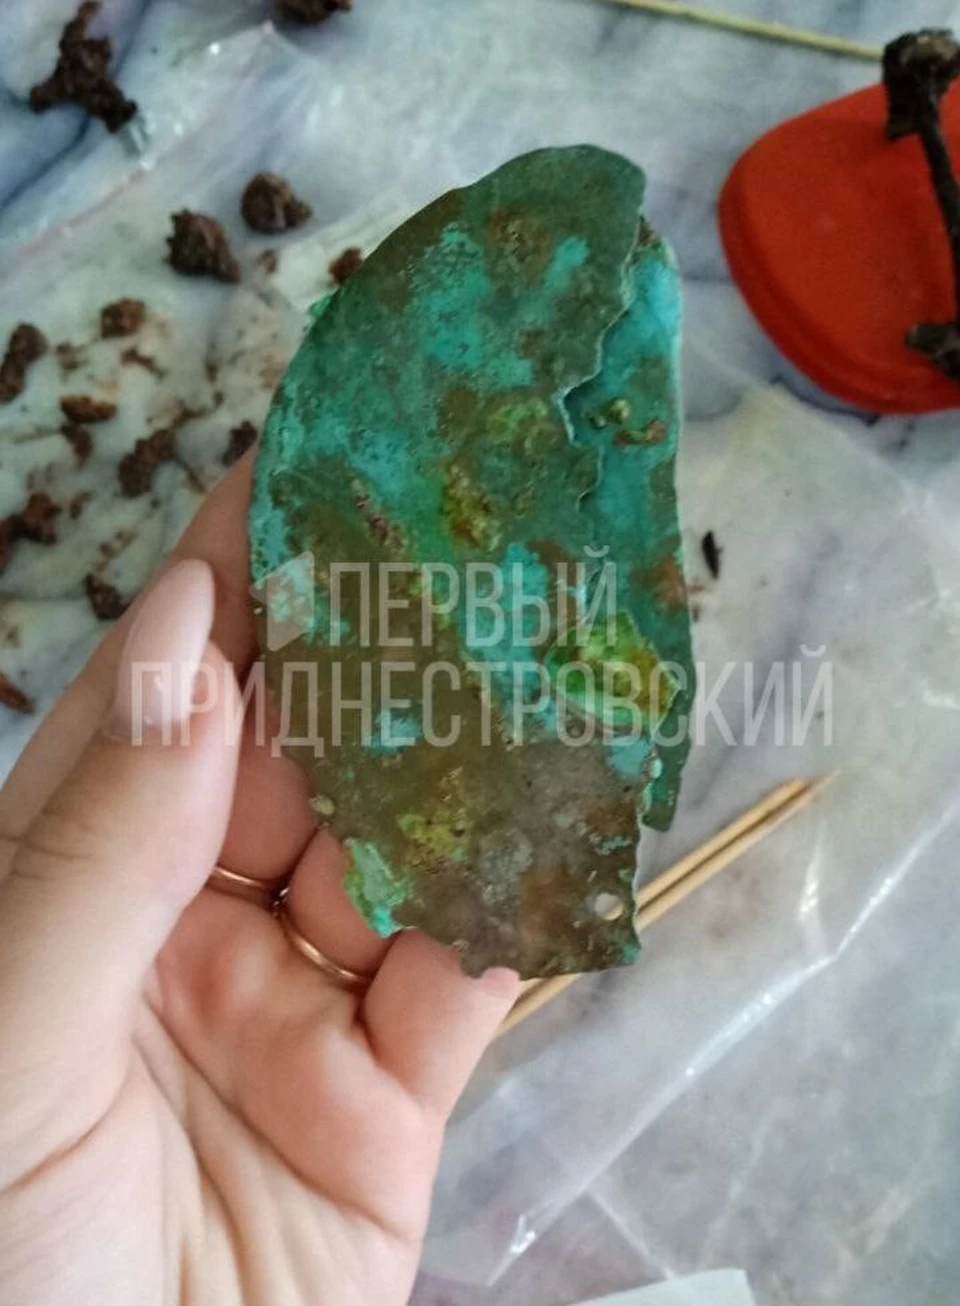 Два бронзовых скифских зеркальца обнаружили археологи в кургане у приднестровского села Коротное.